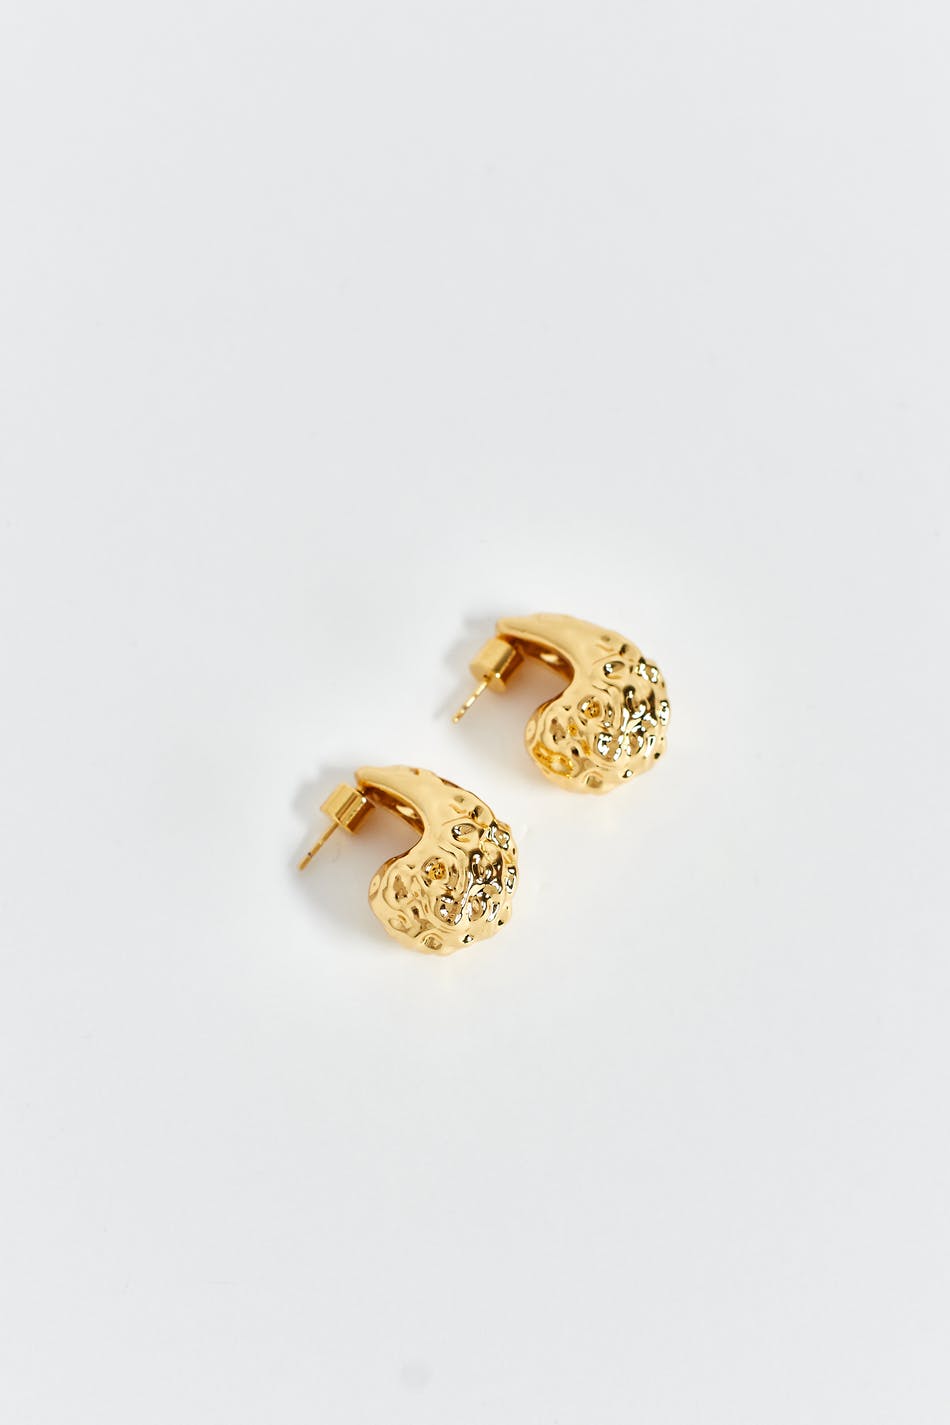 Buy Tear Drop Gold Dangle Earrings Small Dangle Gold Drop Earrings Online  in India - Etsy